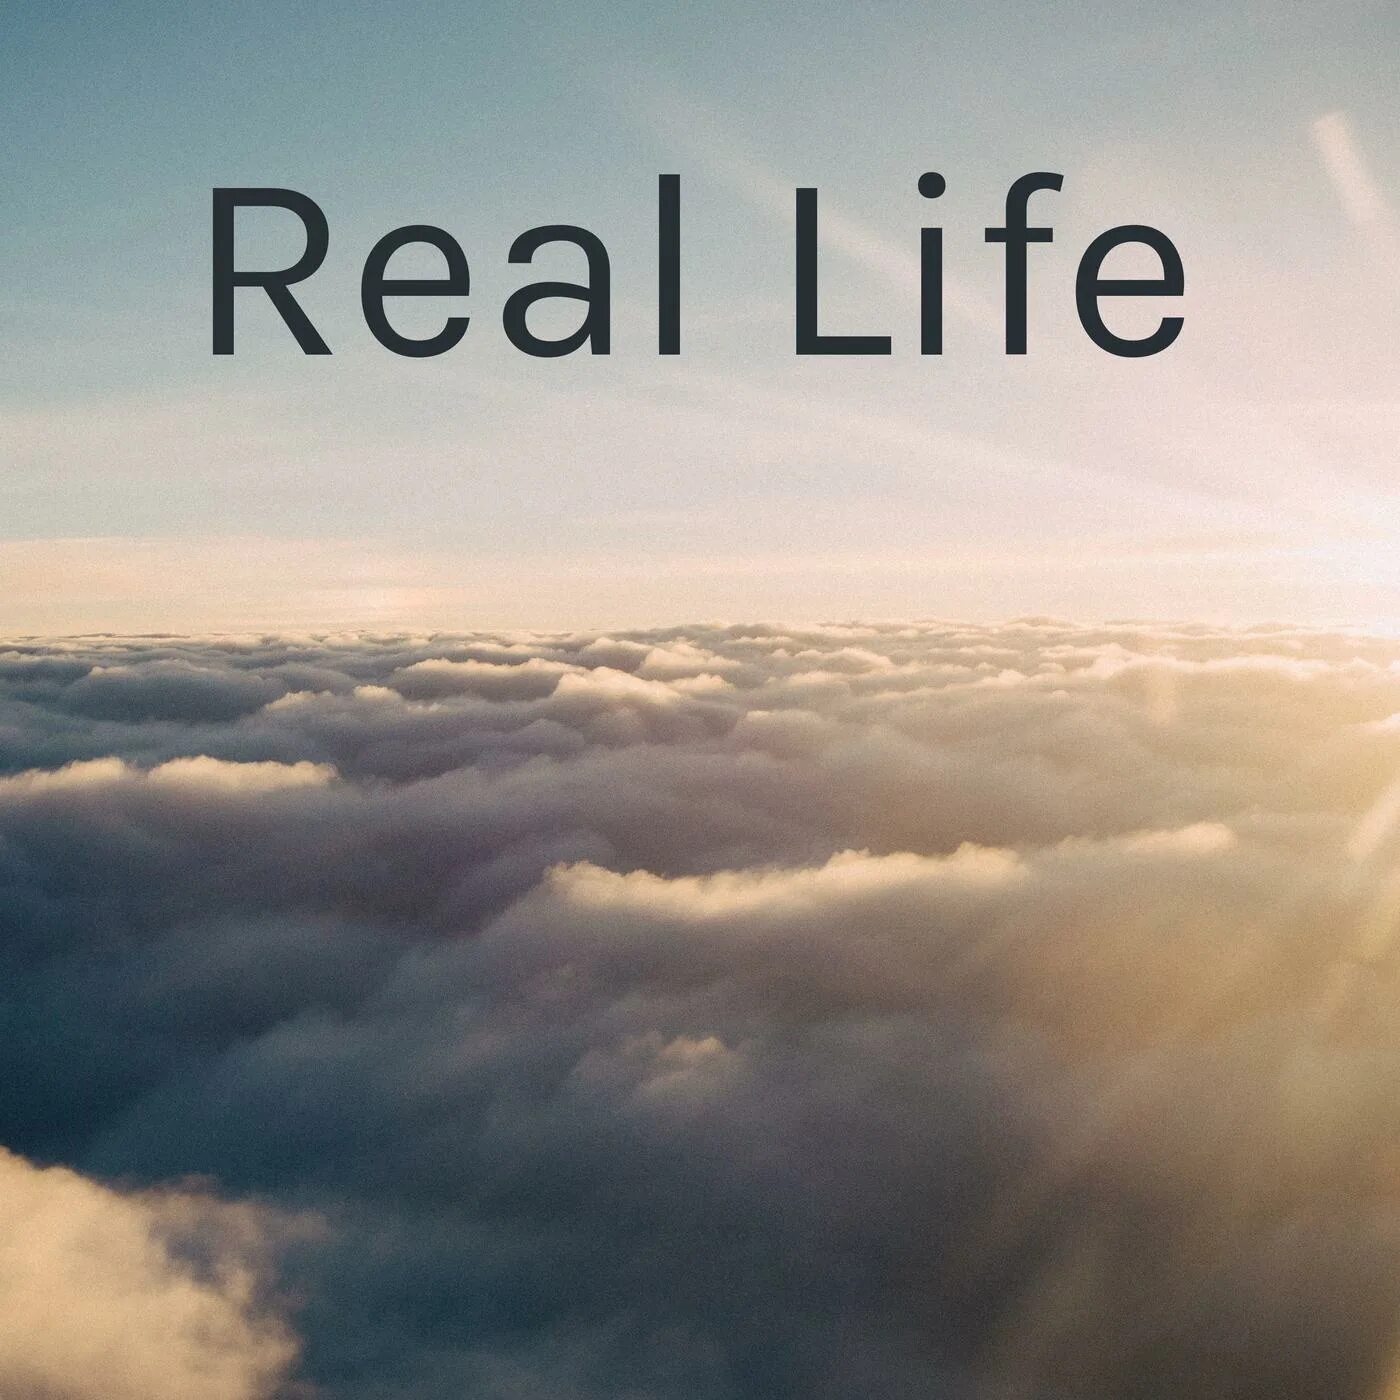 Real life 7. Real Life. Real Life надпись. Real Life картинка. Авы real Life.